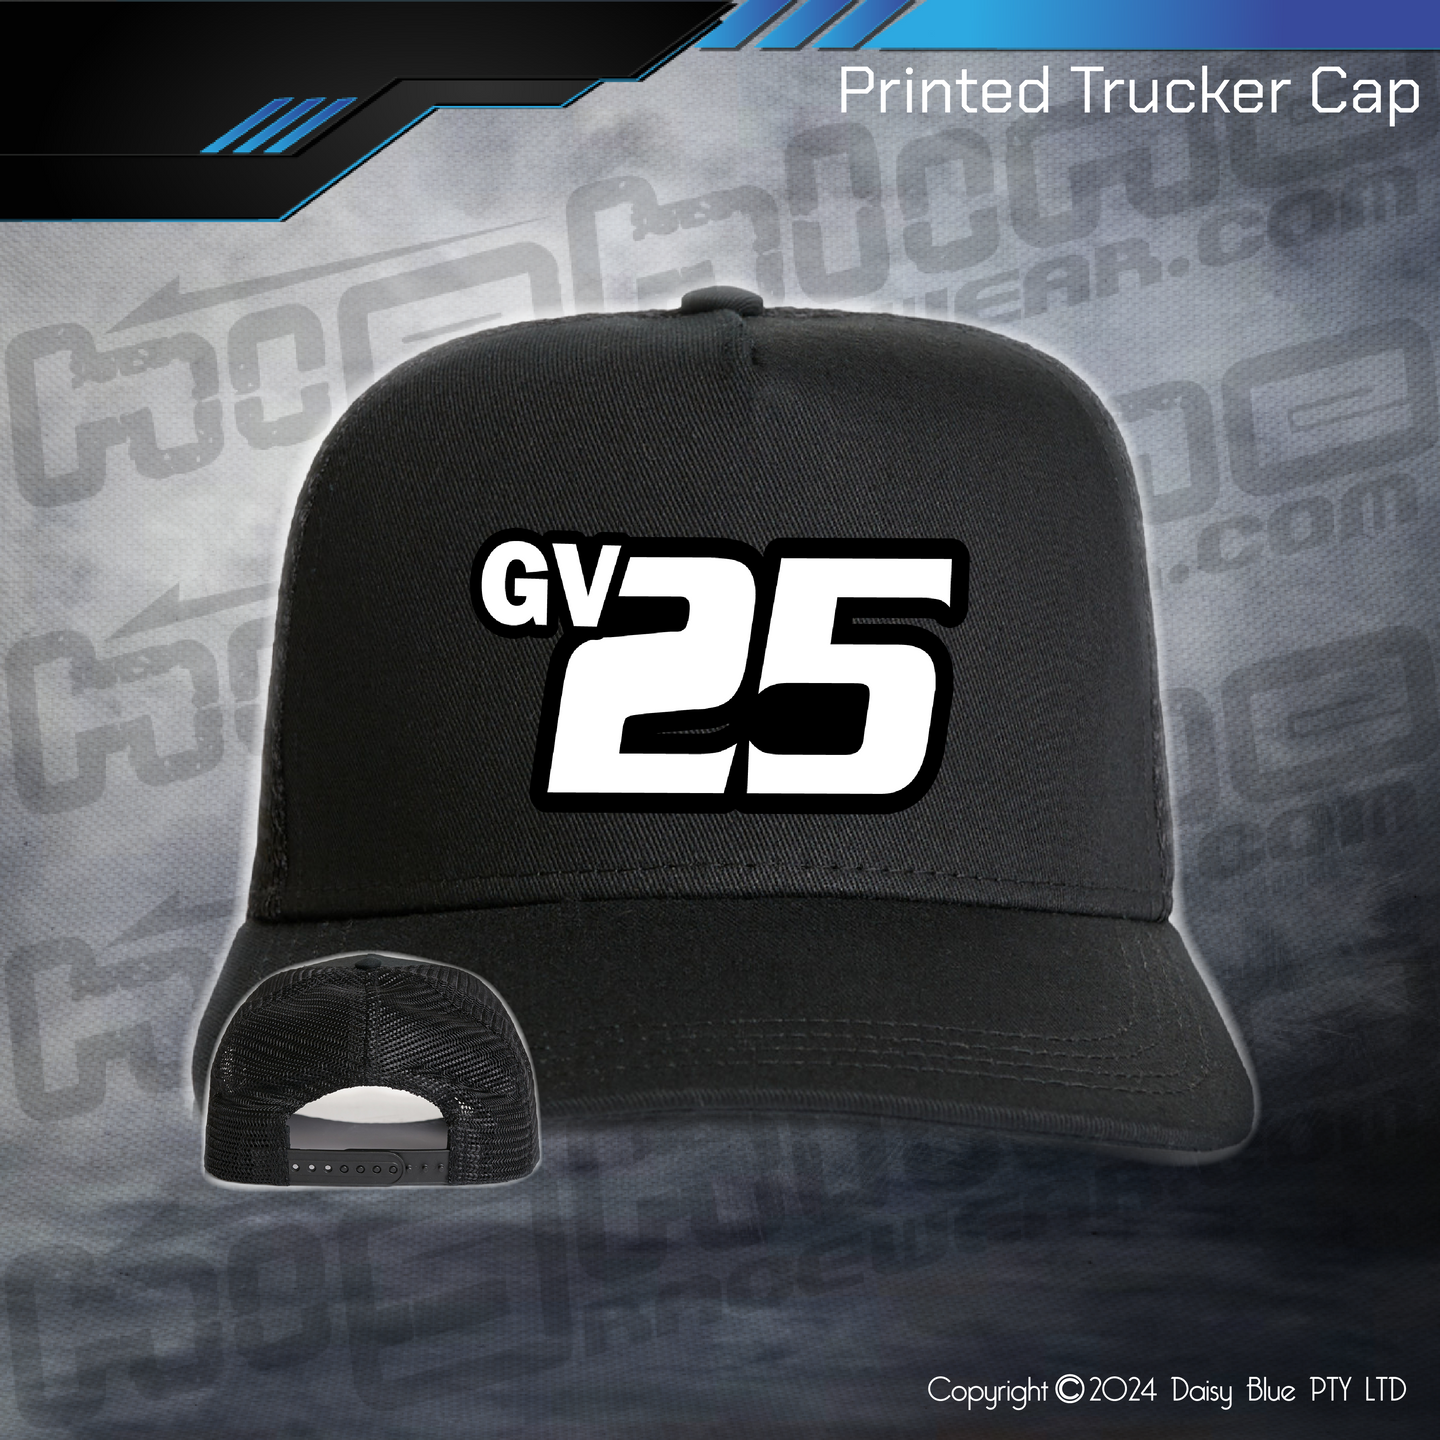 Printed Trucker Cap - Taylor/Humphrey